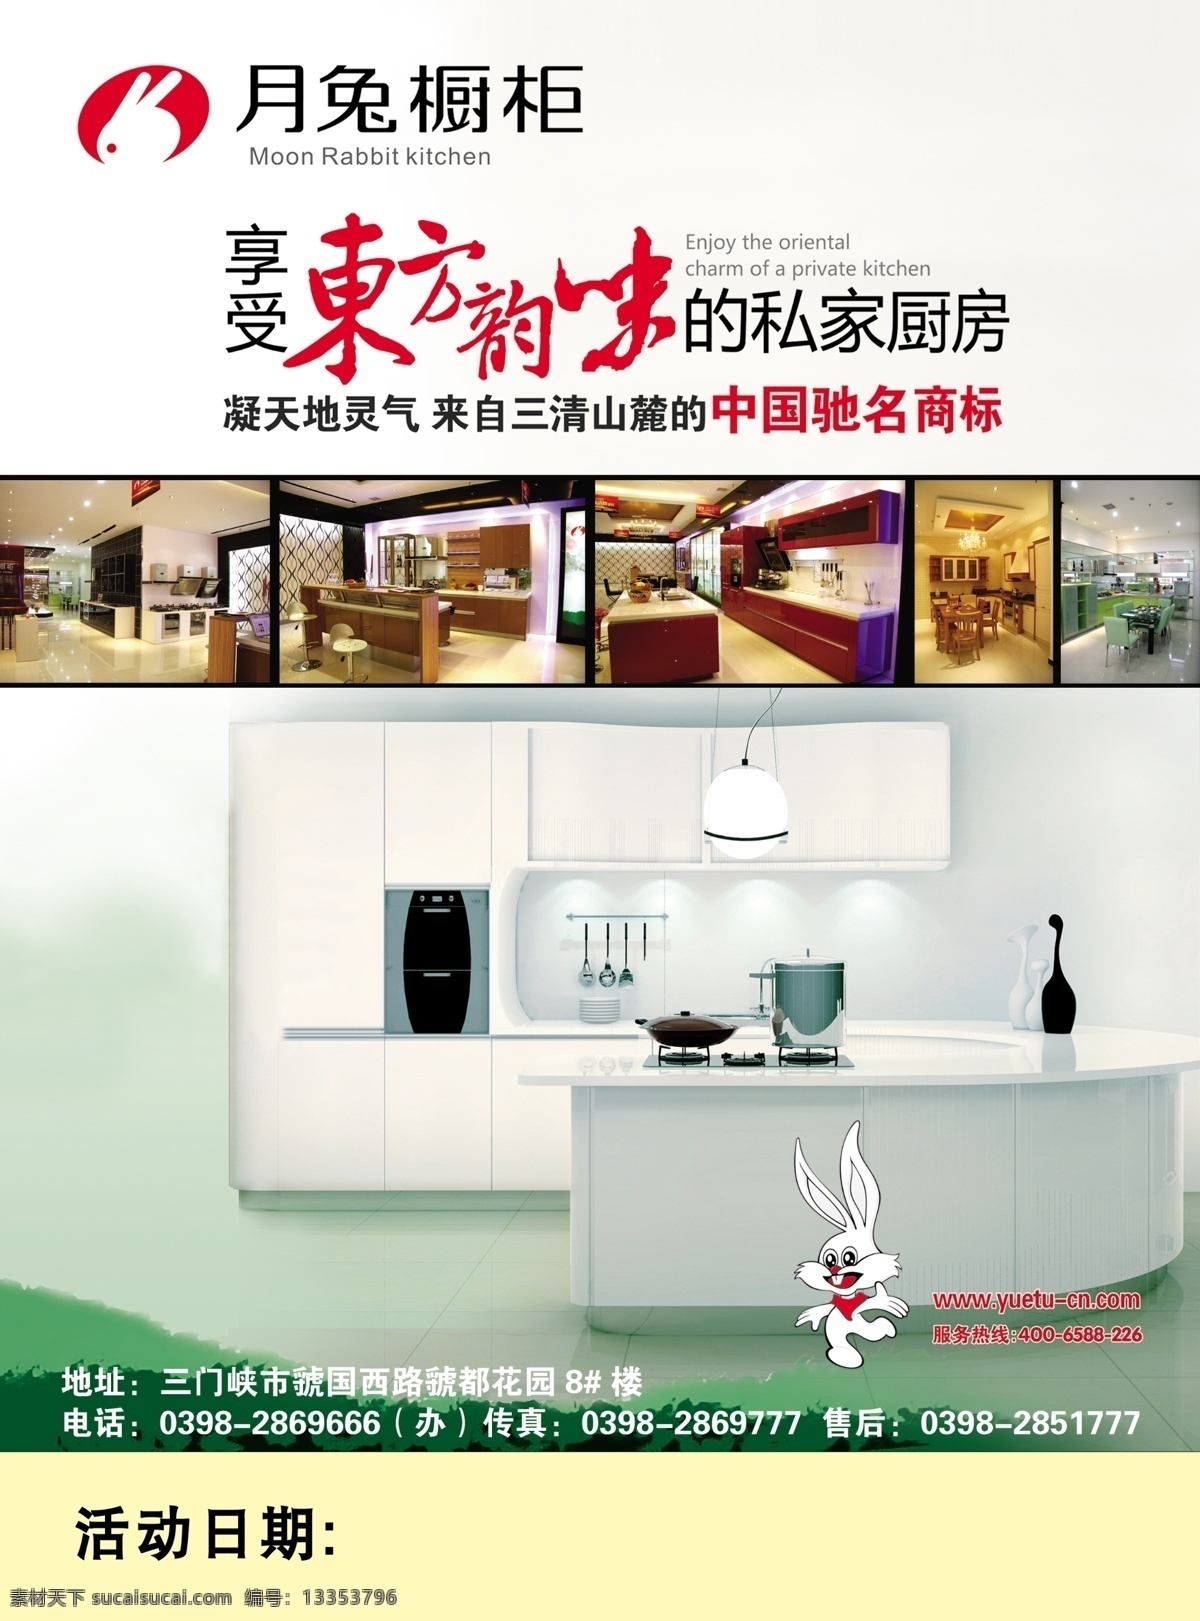 月兔 月兔橱柜 橱柜 私家厨房 厨房效果 广告设计模板 源文件